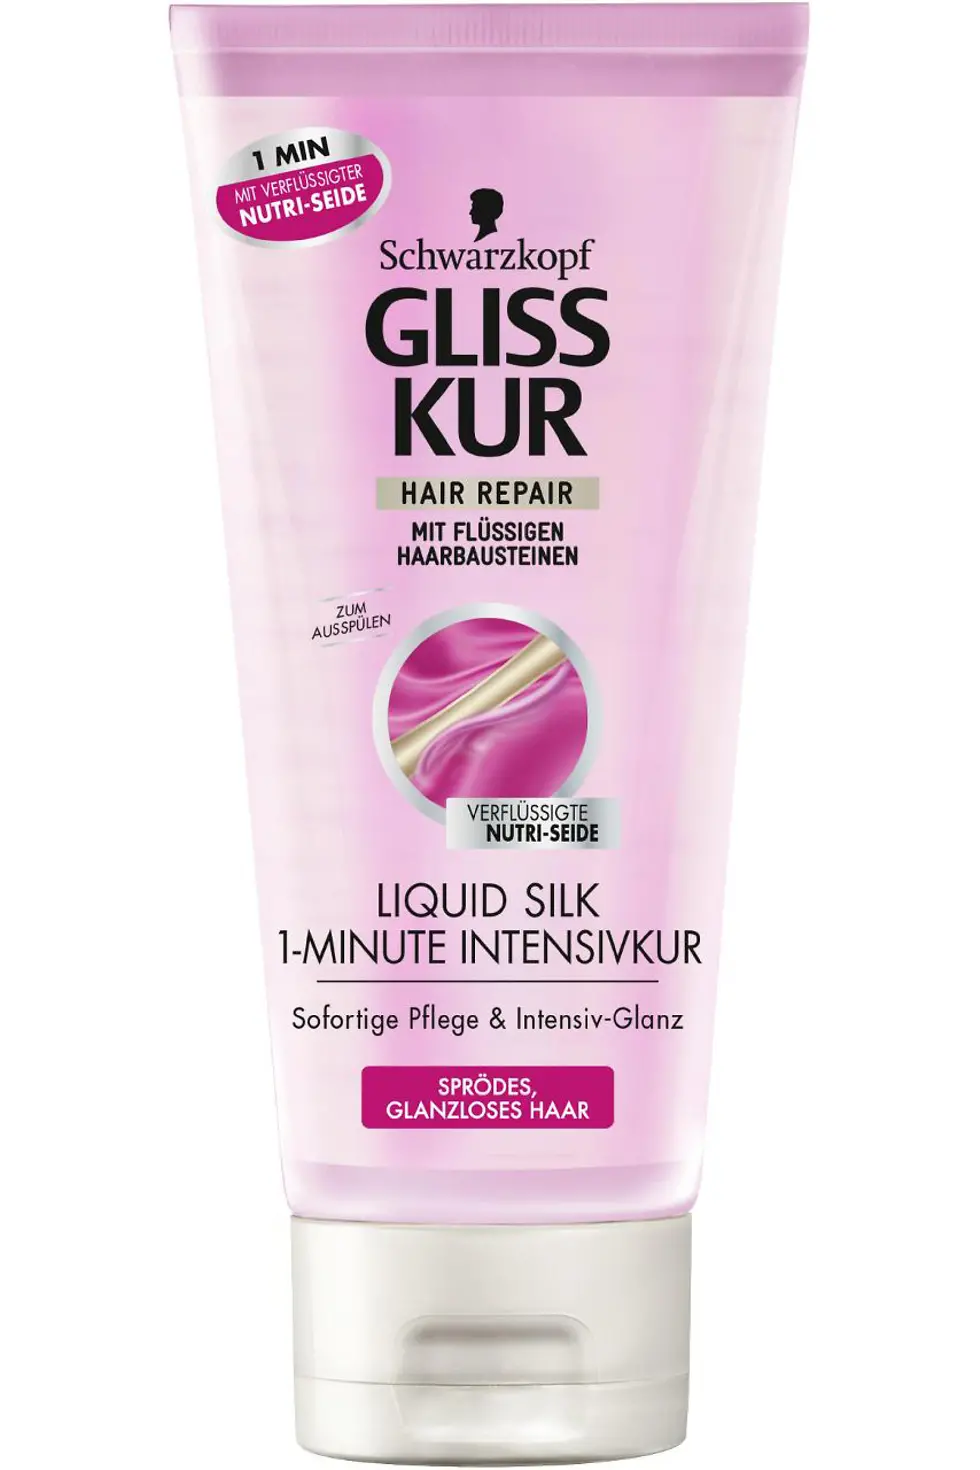 Gliss Kur Liquid Silk 1-Minute Intensivkur